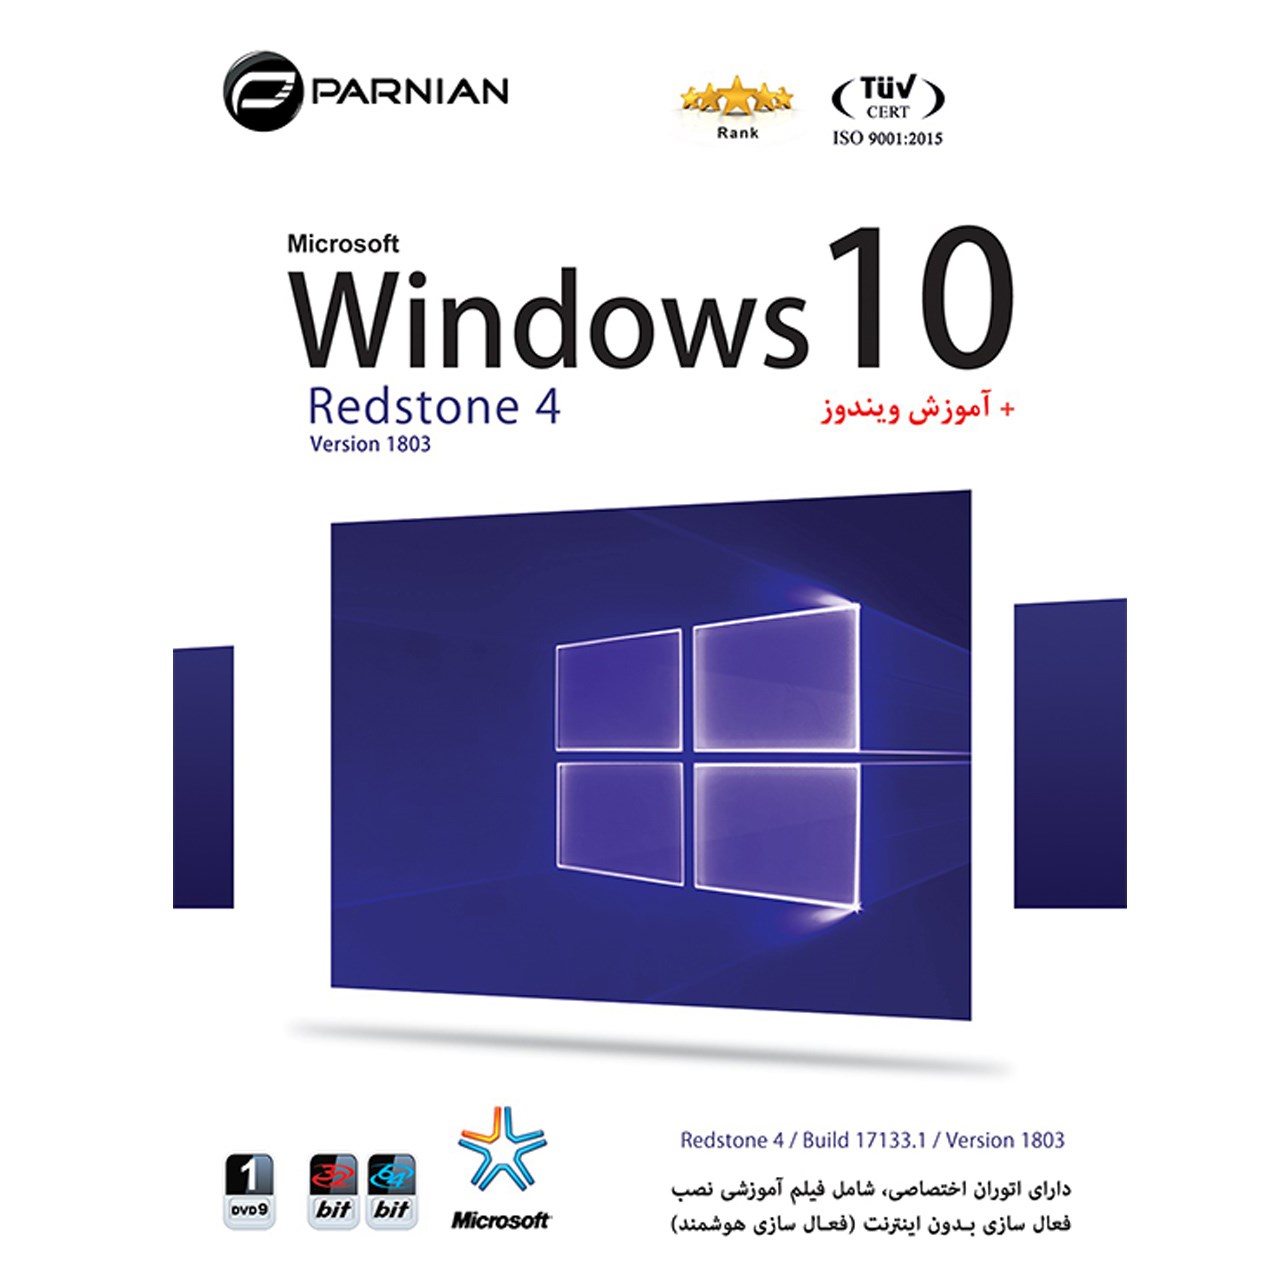 سیستم عامل windows10 redston4نسخه 1803.نشر پرنیان